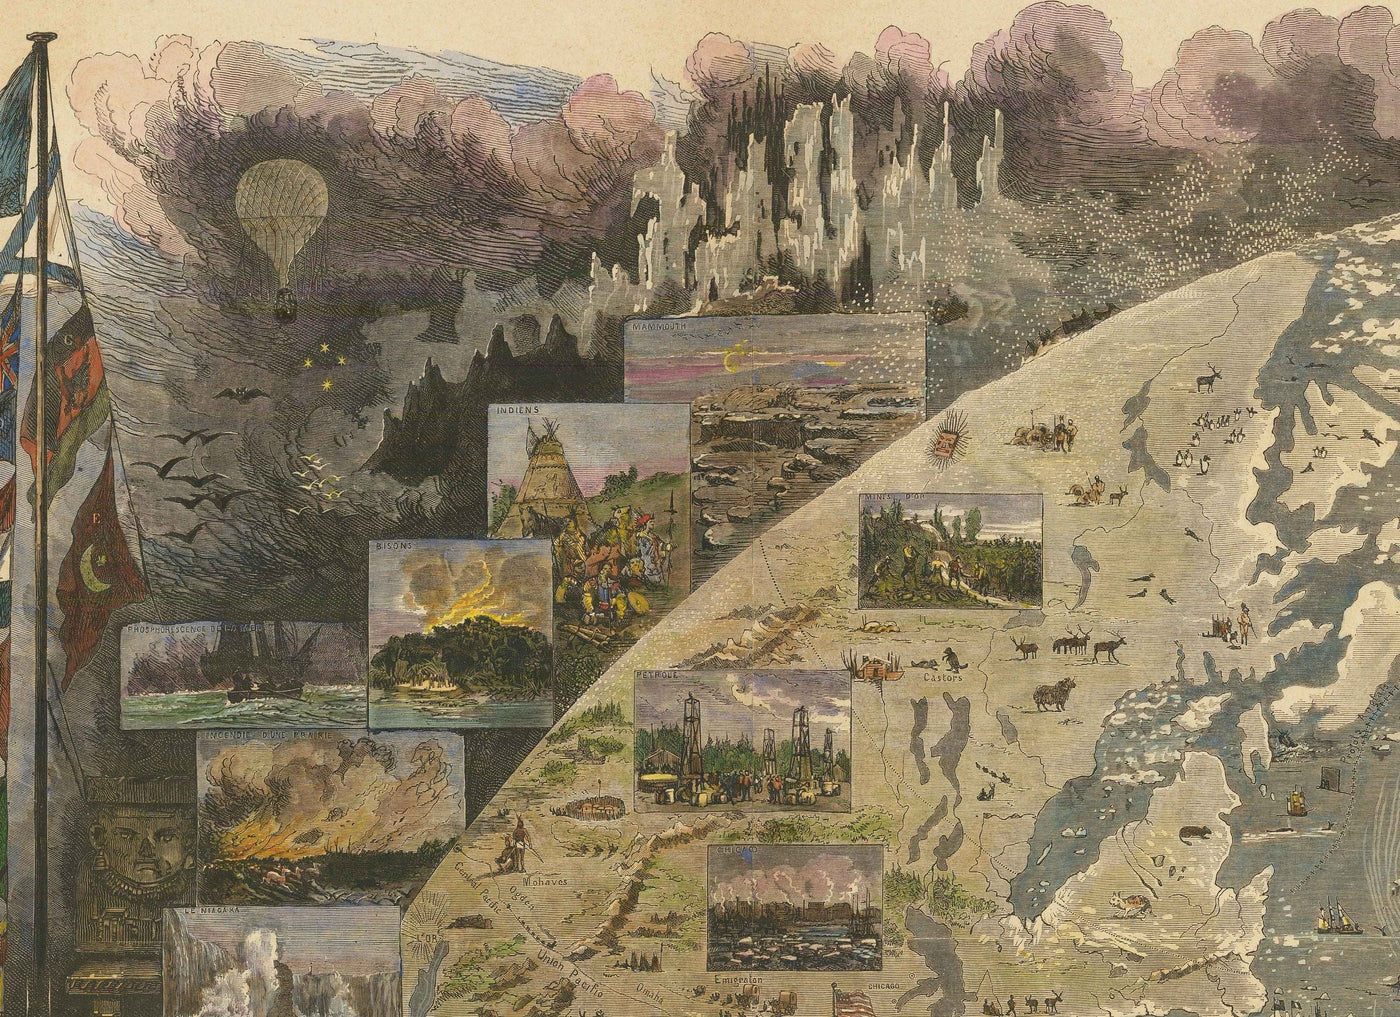 Antiguo mapa del mundo, 1876 - "Una vuelta al mundo" de Le Monde - Exploración del siglo XIX, Historia, Colonialismo